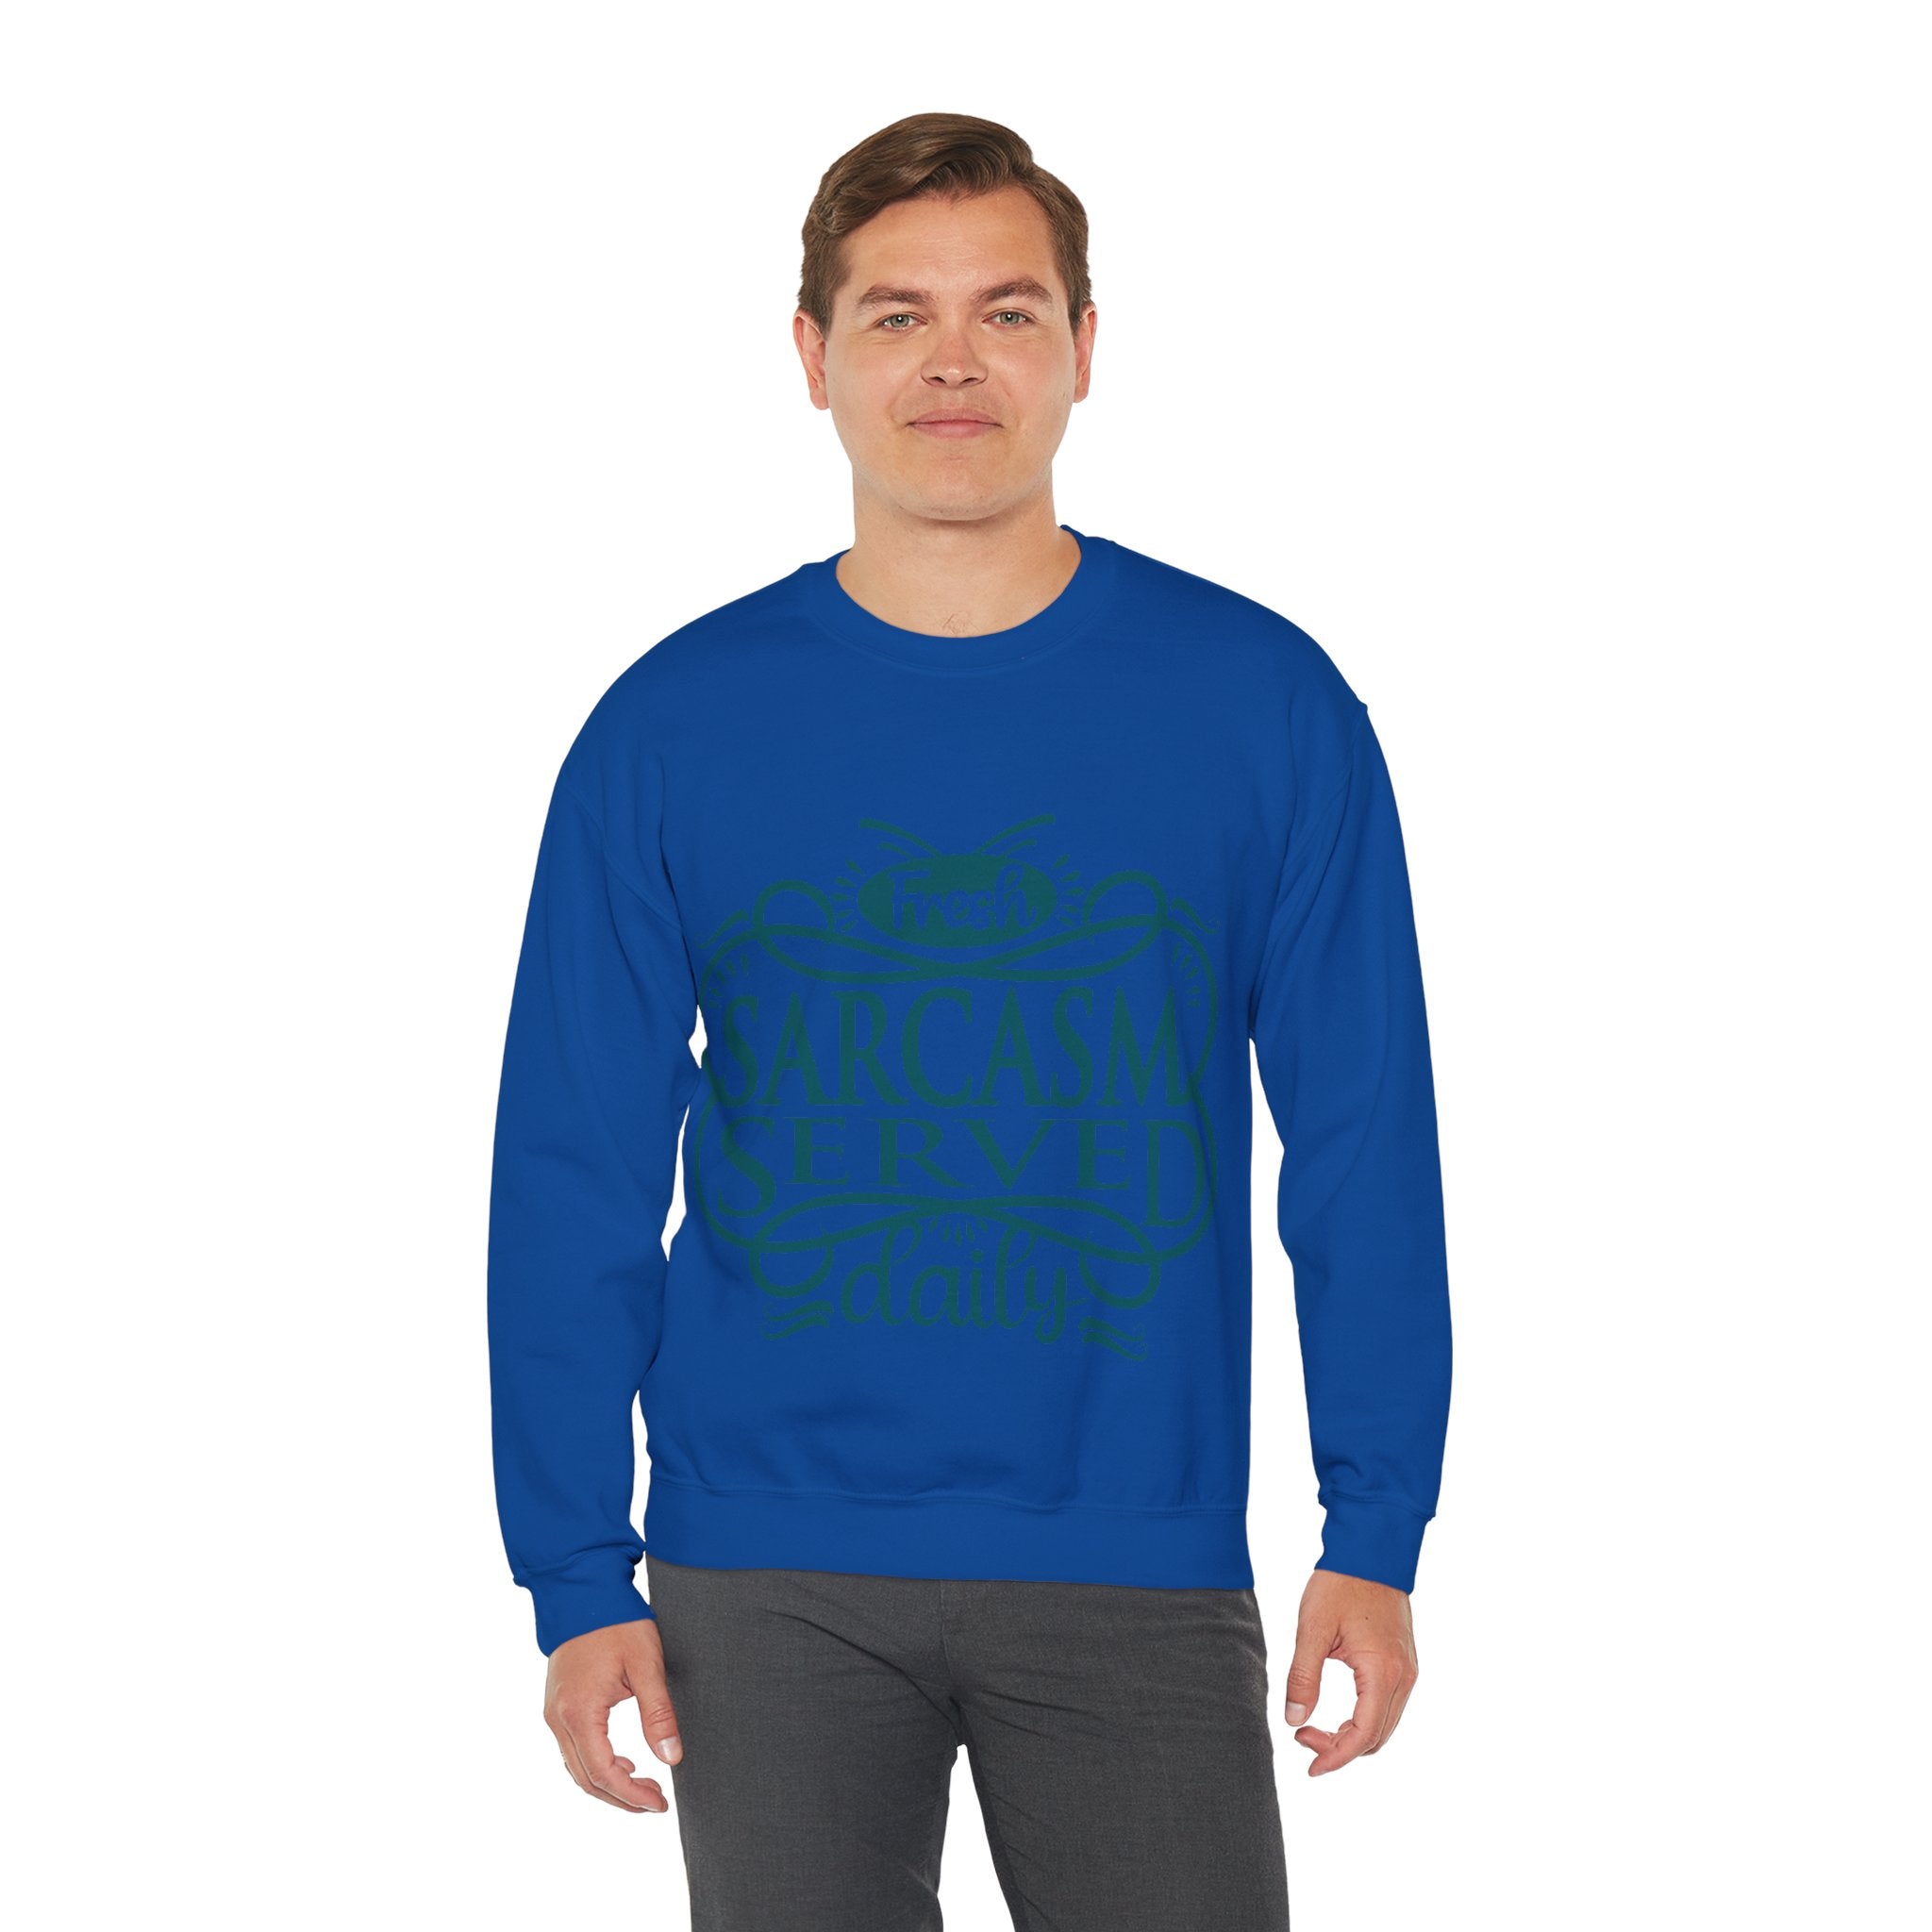 Sarcastic Sweatshirt for men